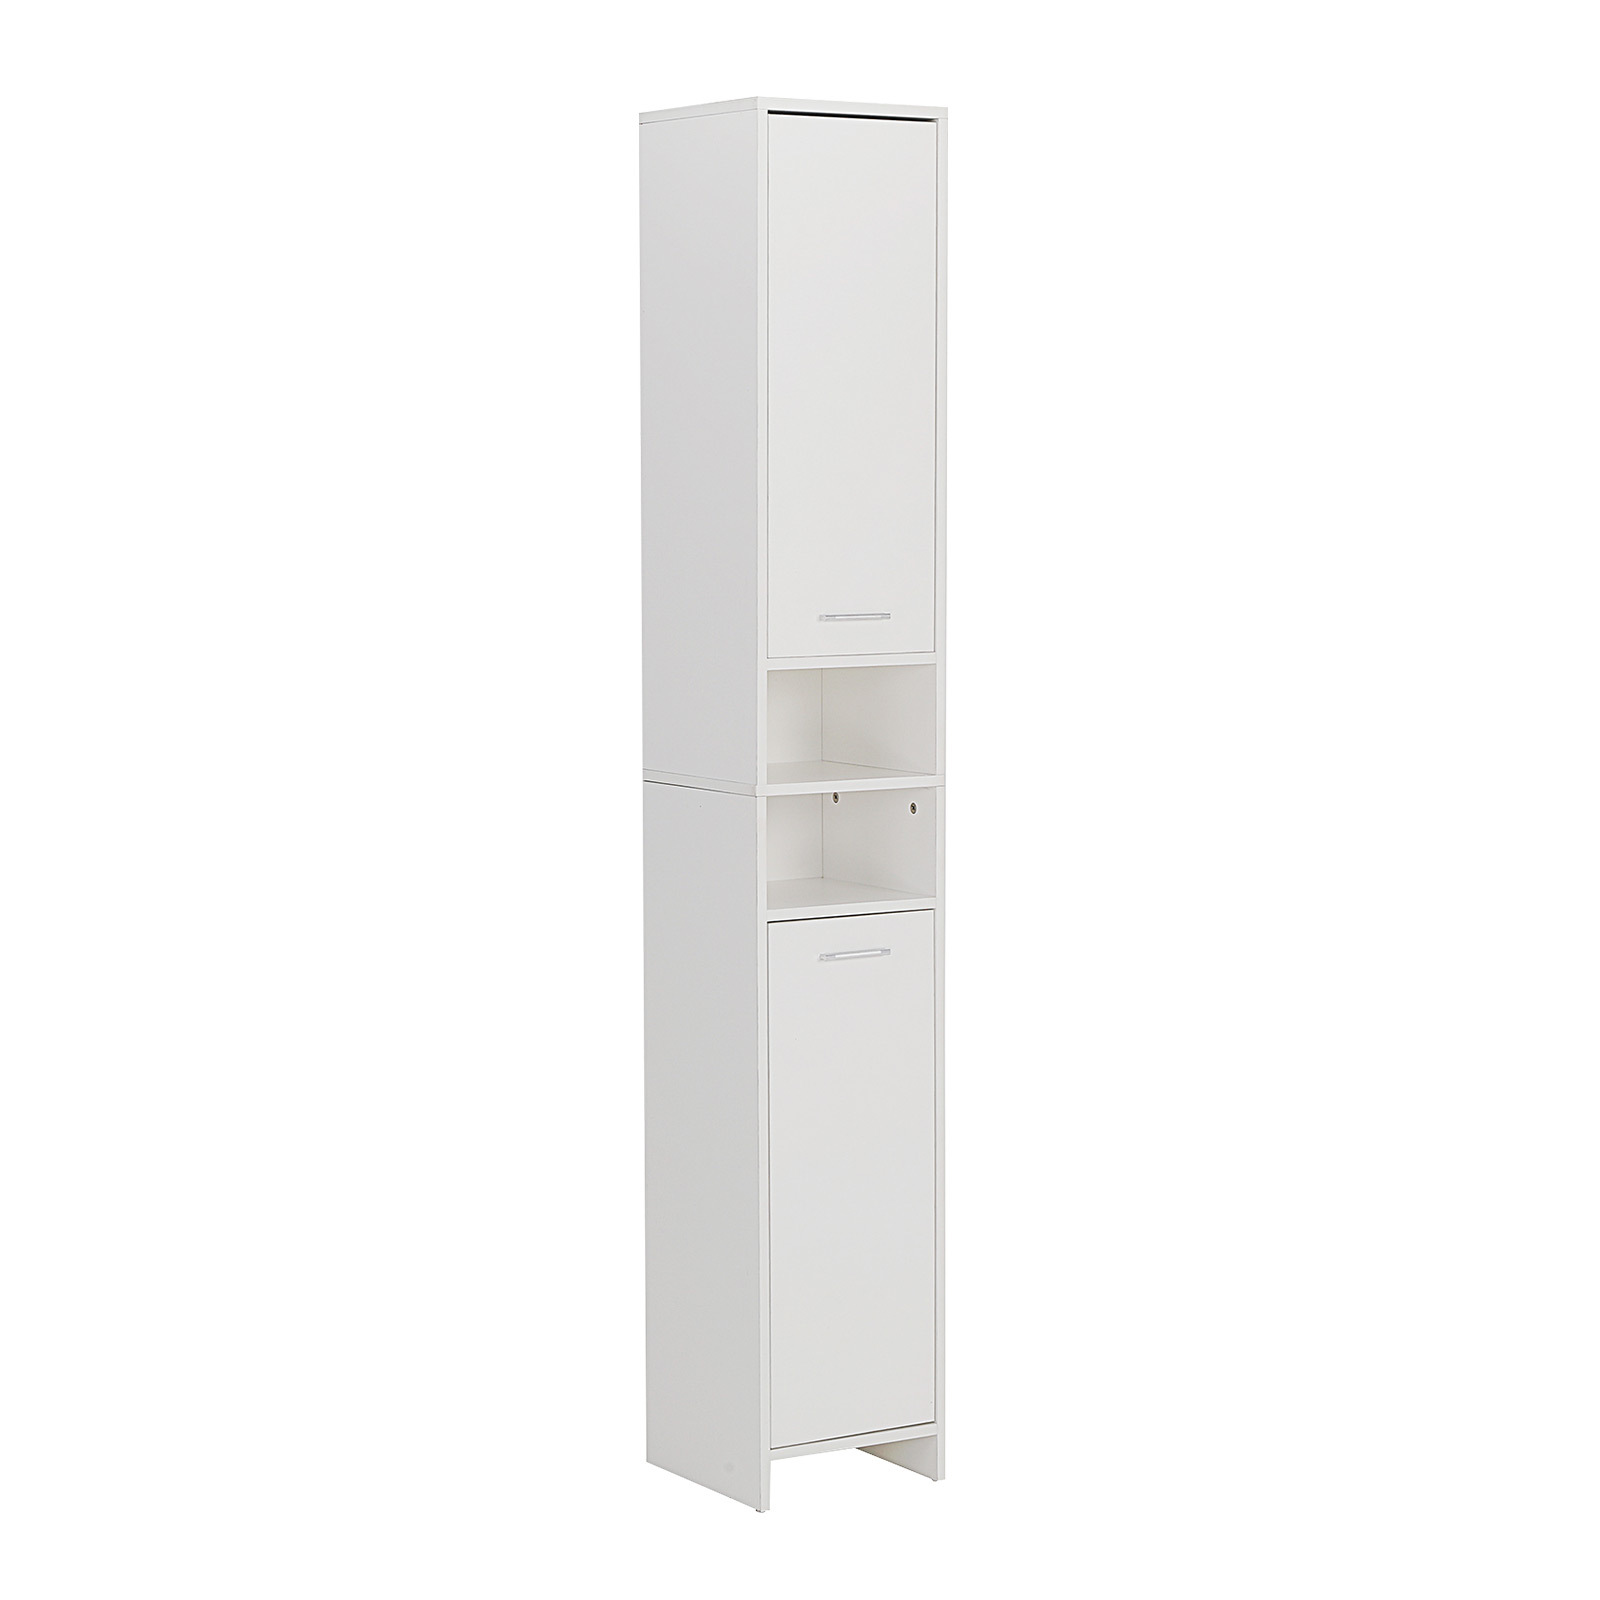 185cm Bathroom Storage Cabinet 8 Tier - WHITE